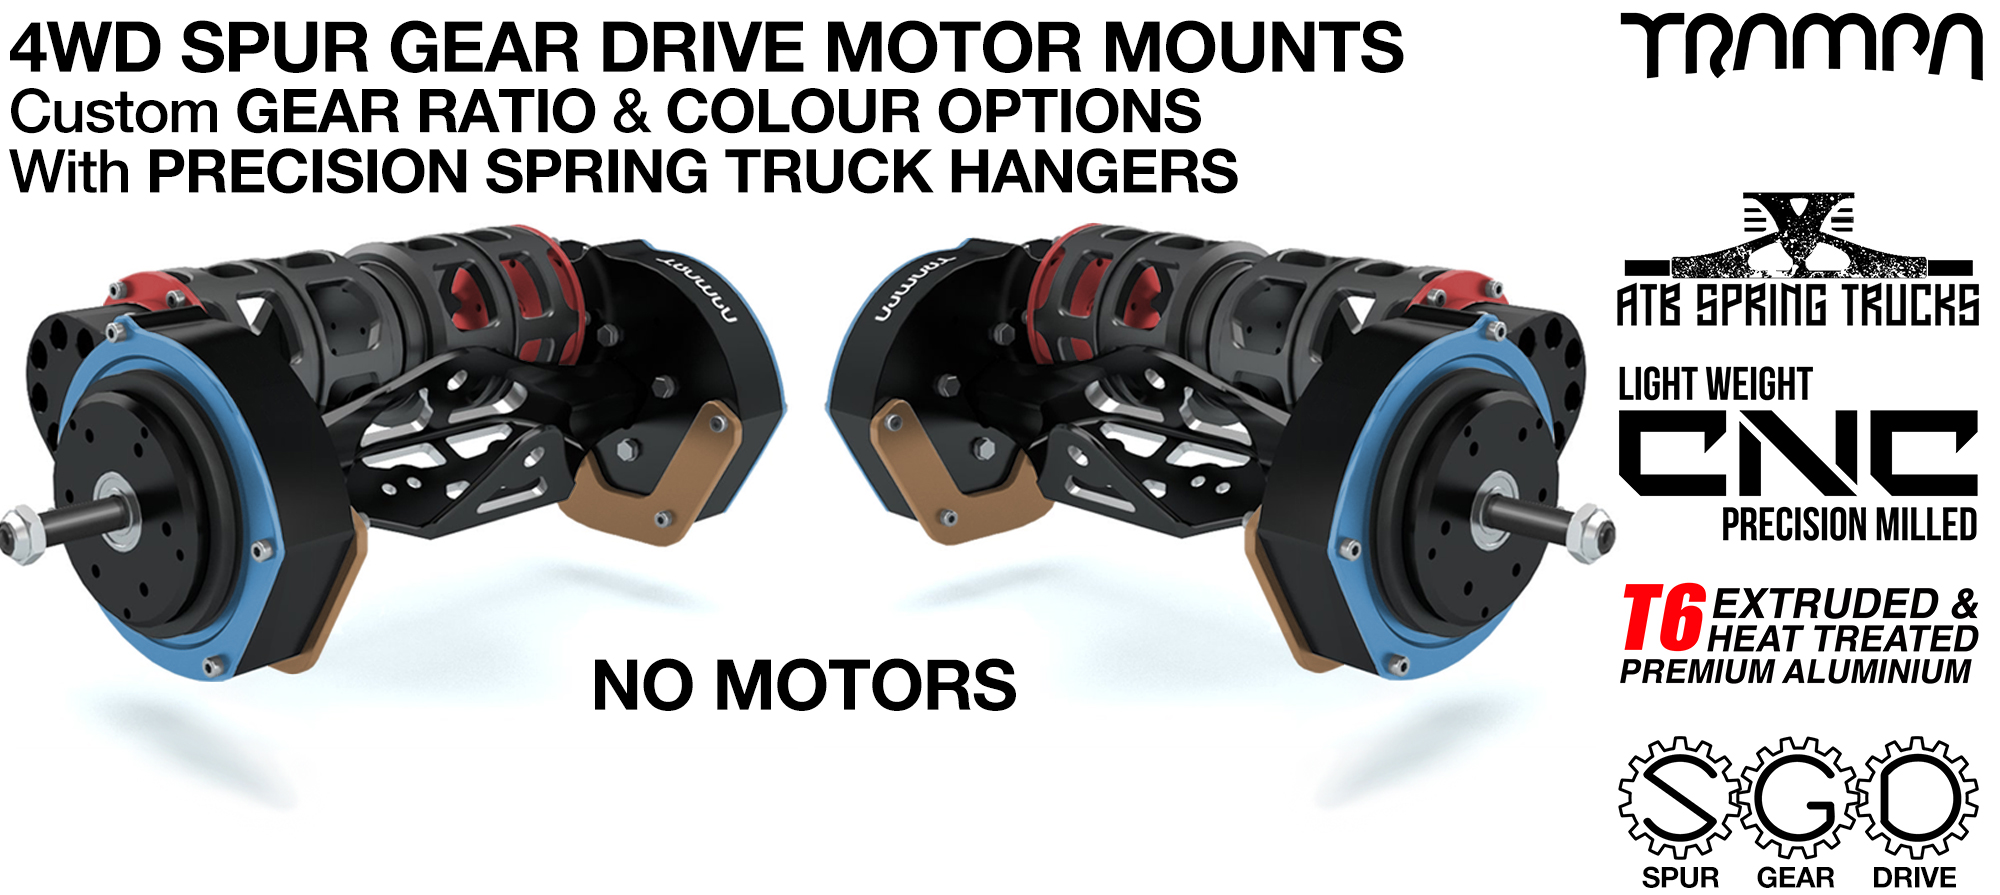 4WD Mountainboard Spur Gear Drive Motor Mounts & Hangers